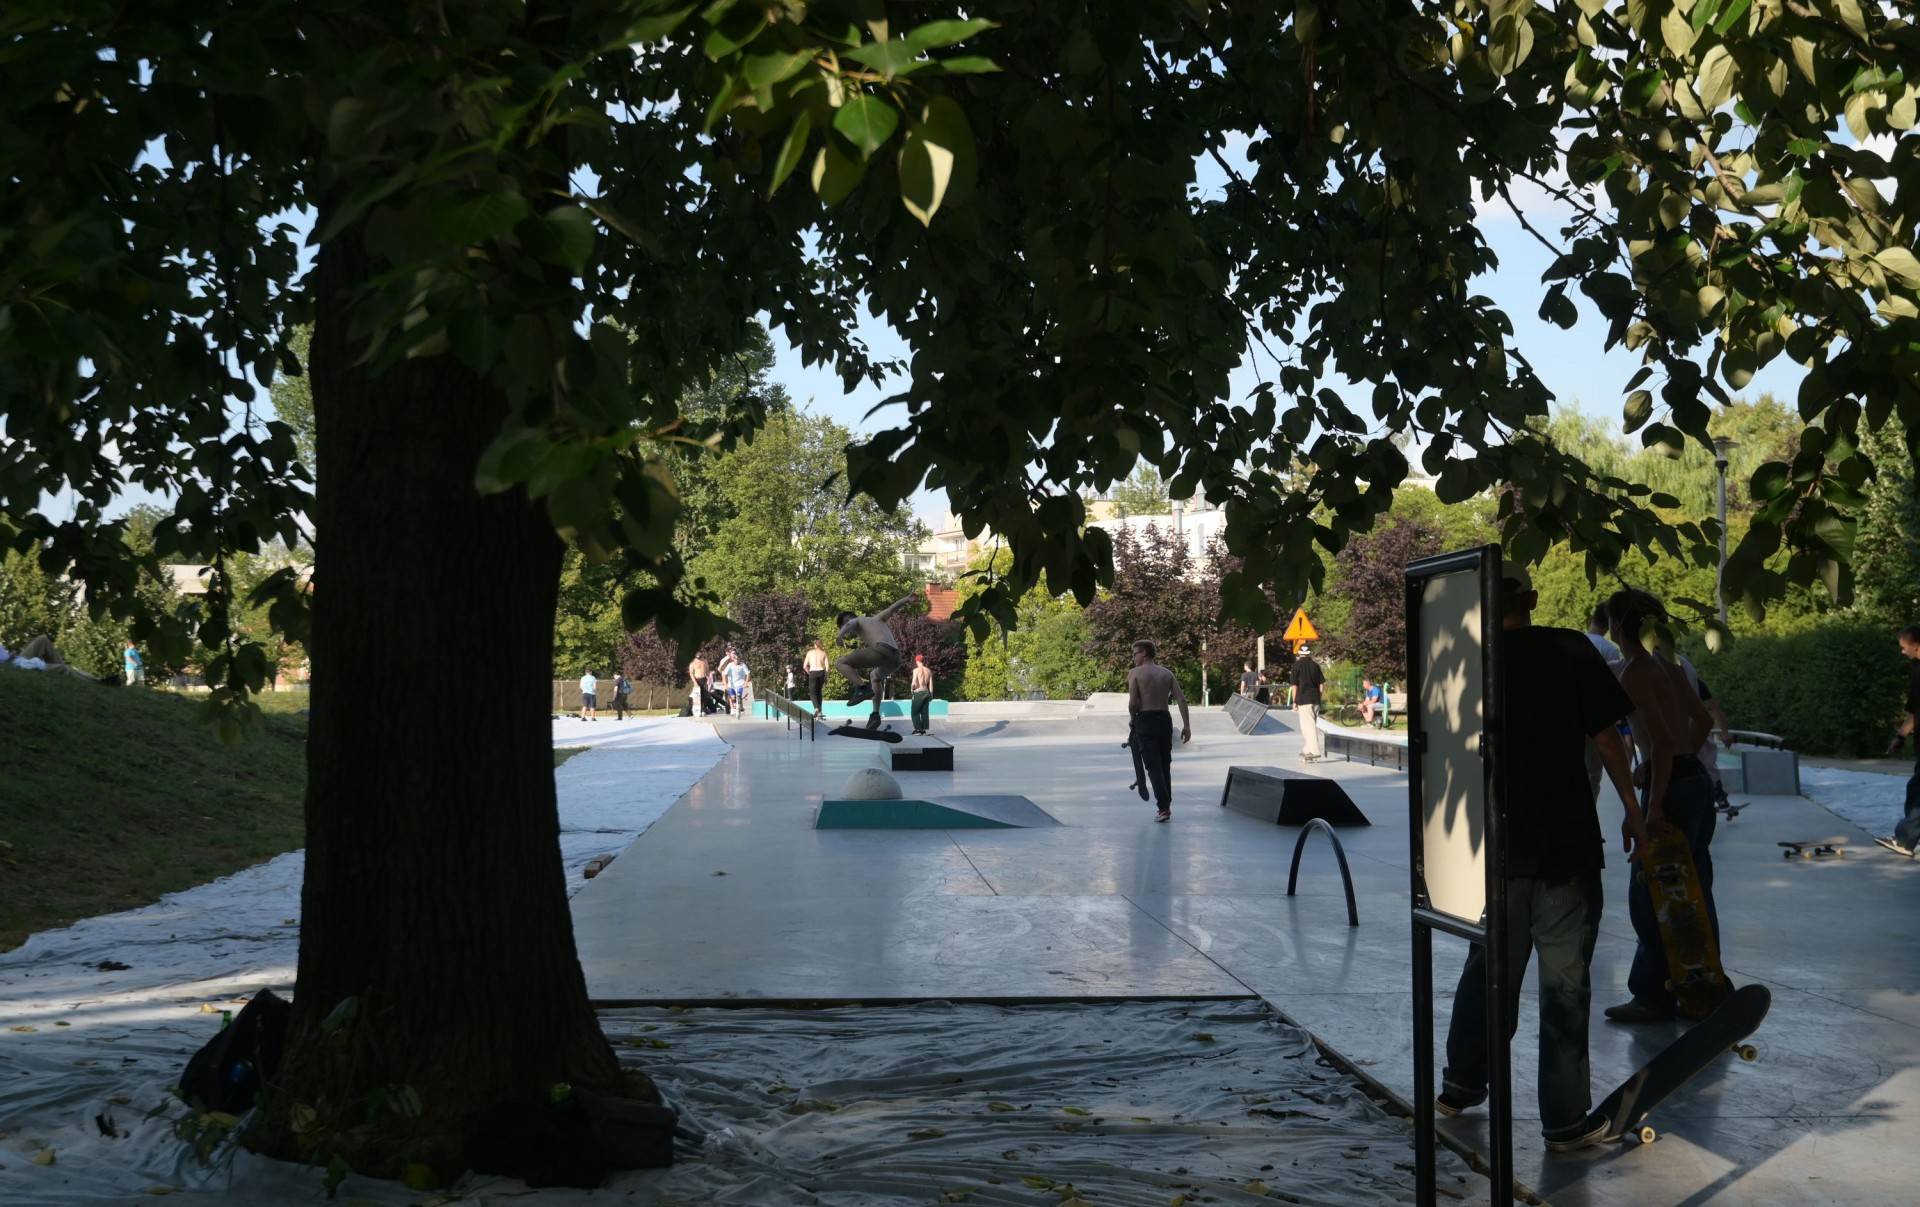 Nowy skatepark w Krakowie oficjalnie otwarty, kolejny taki obiekt w mieście